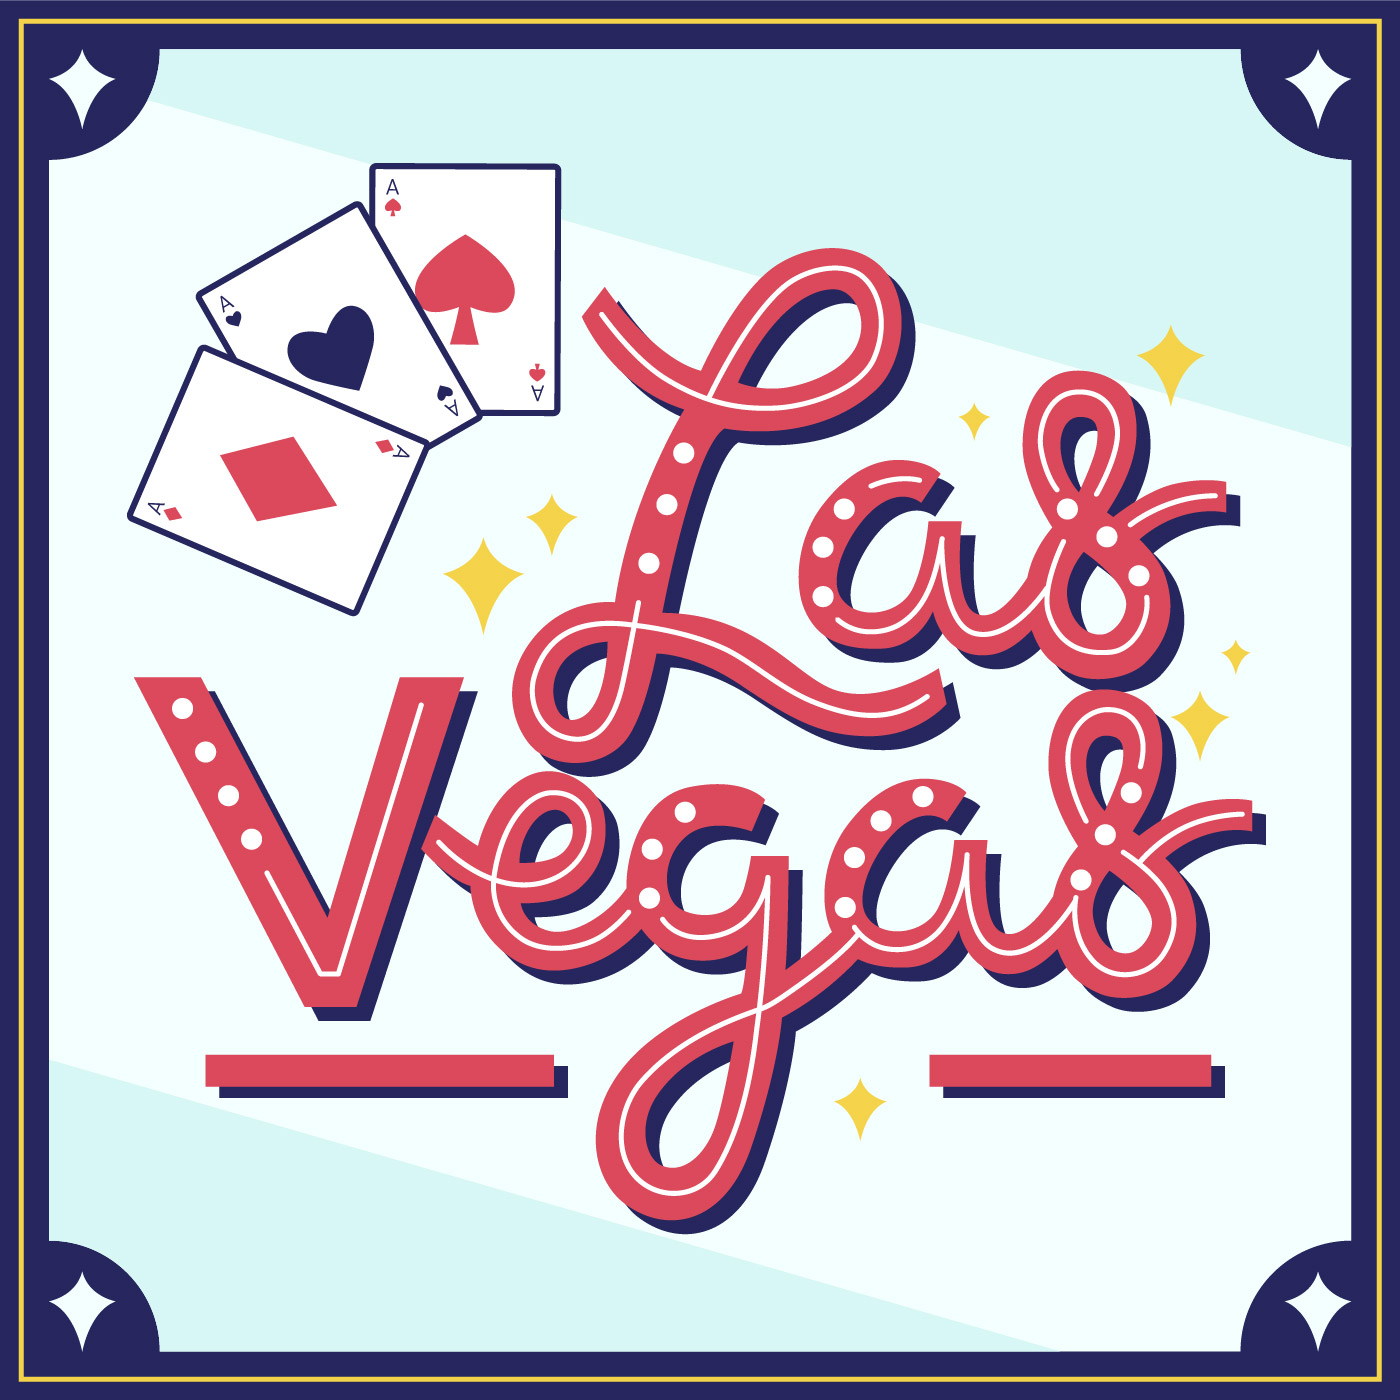 Viva Las Vegas Typography Vector 259434 Vector Art at Vecteezy